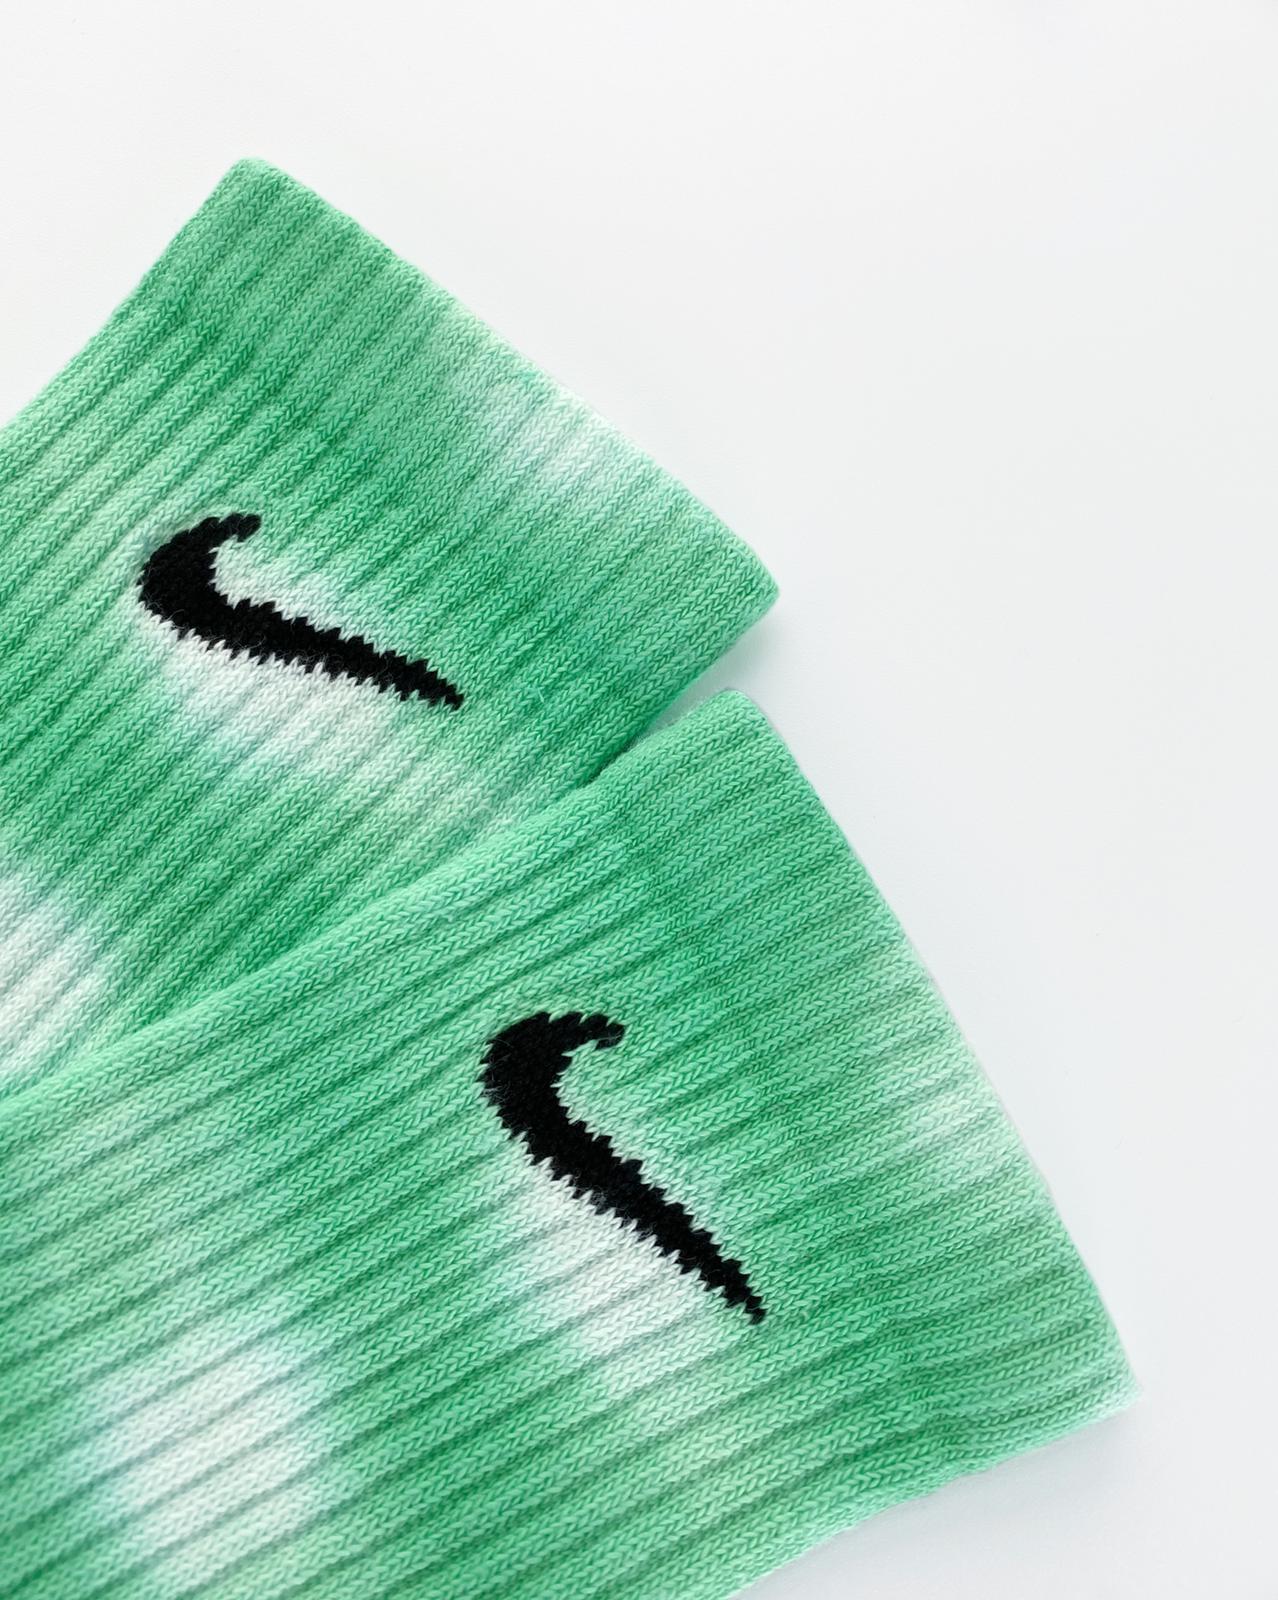 Calcetines Nike tie dye stripes Kiwi detalhes. Calcetines únicos y diferentes 100% originales teñidos a mano. Shop NOW!